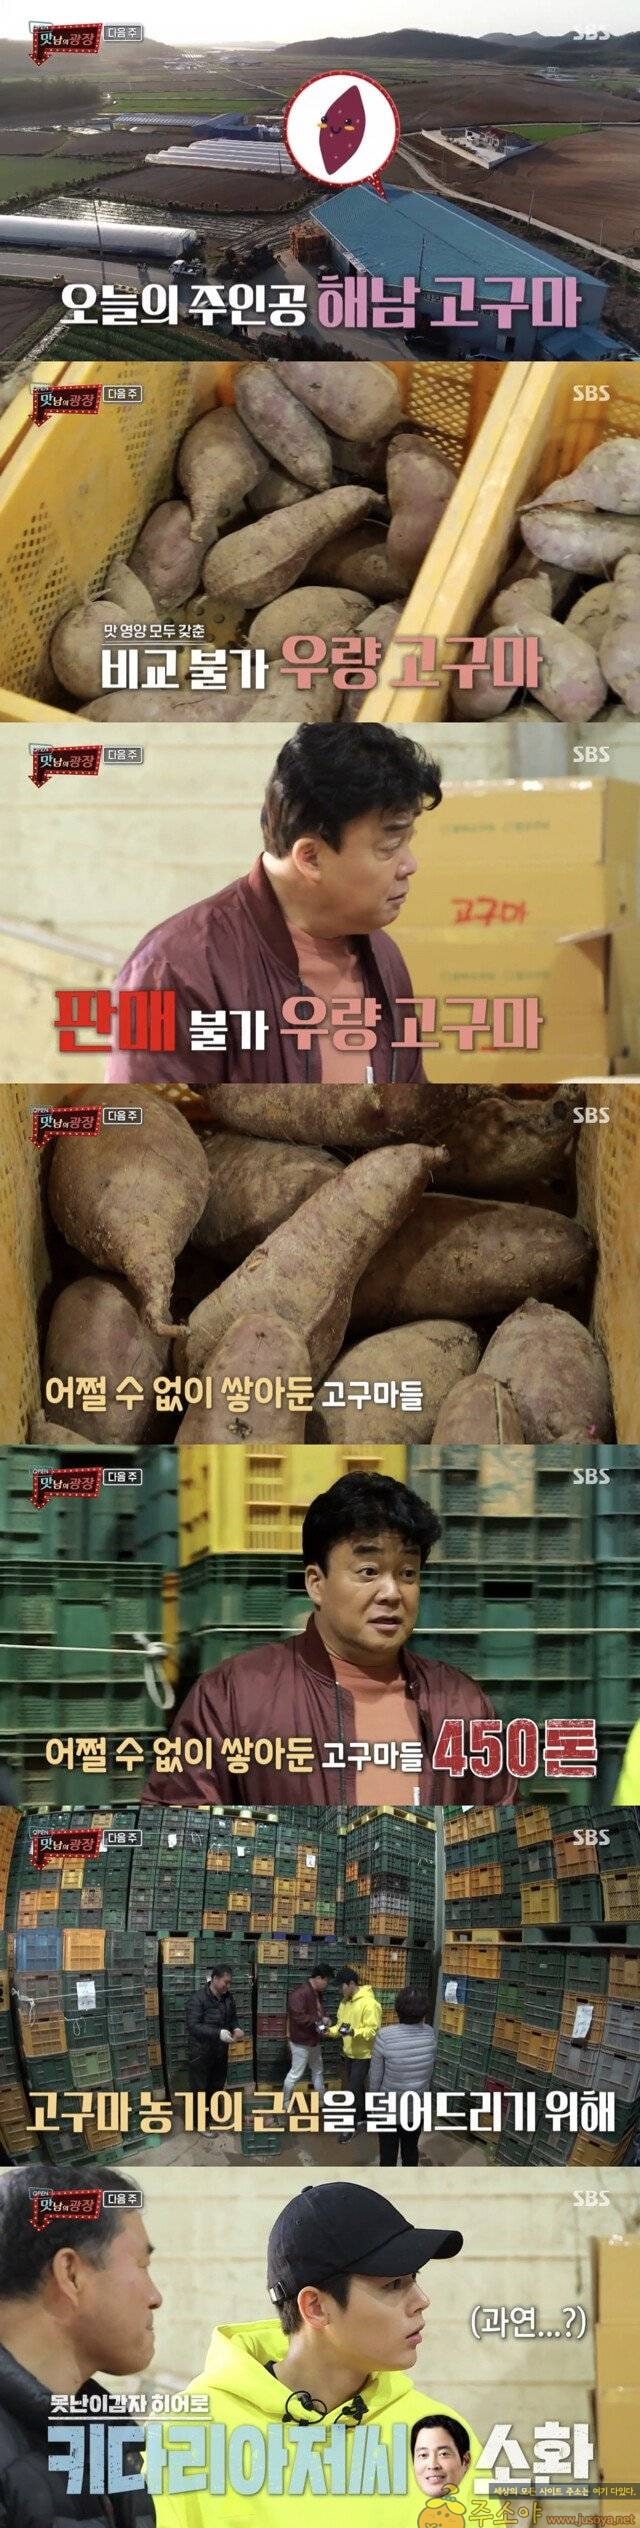 주소야 유머 감자 30톤에 이어 고구마 300톤 팔게 된 백종원과 이마트